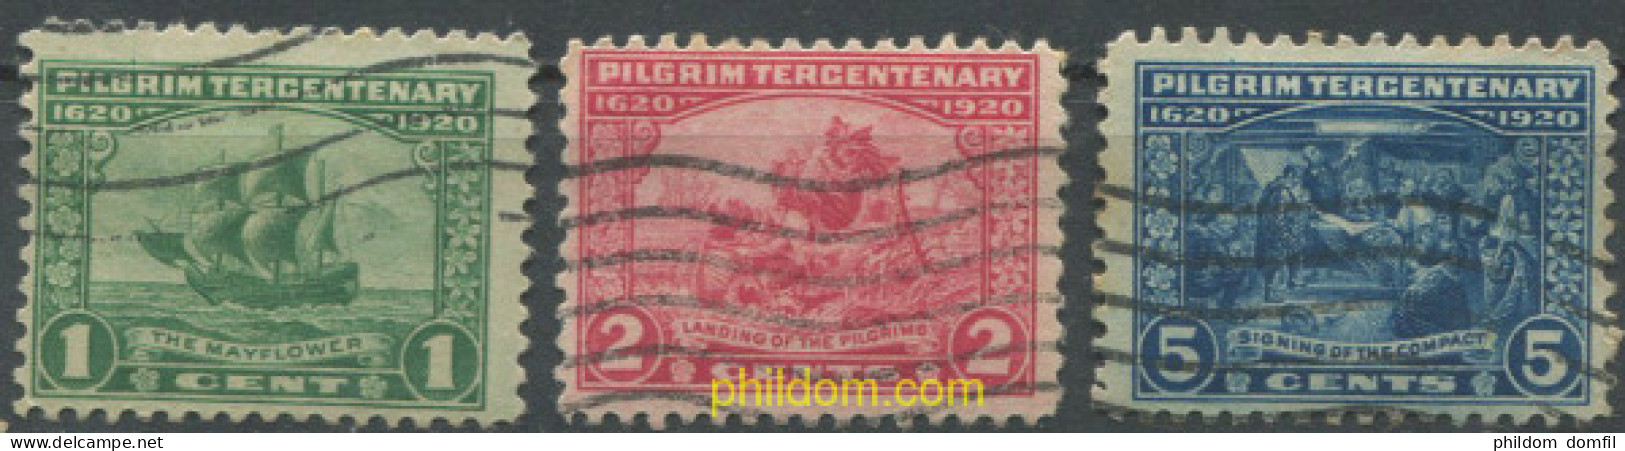 684060 USED ESTADOS UNIDOS 1920 TRICENTENARIO DE LA LLEGADA DE MAYFLOWER EN AMERICA - Unused Stamps